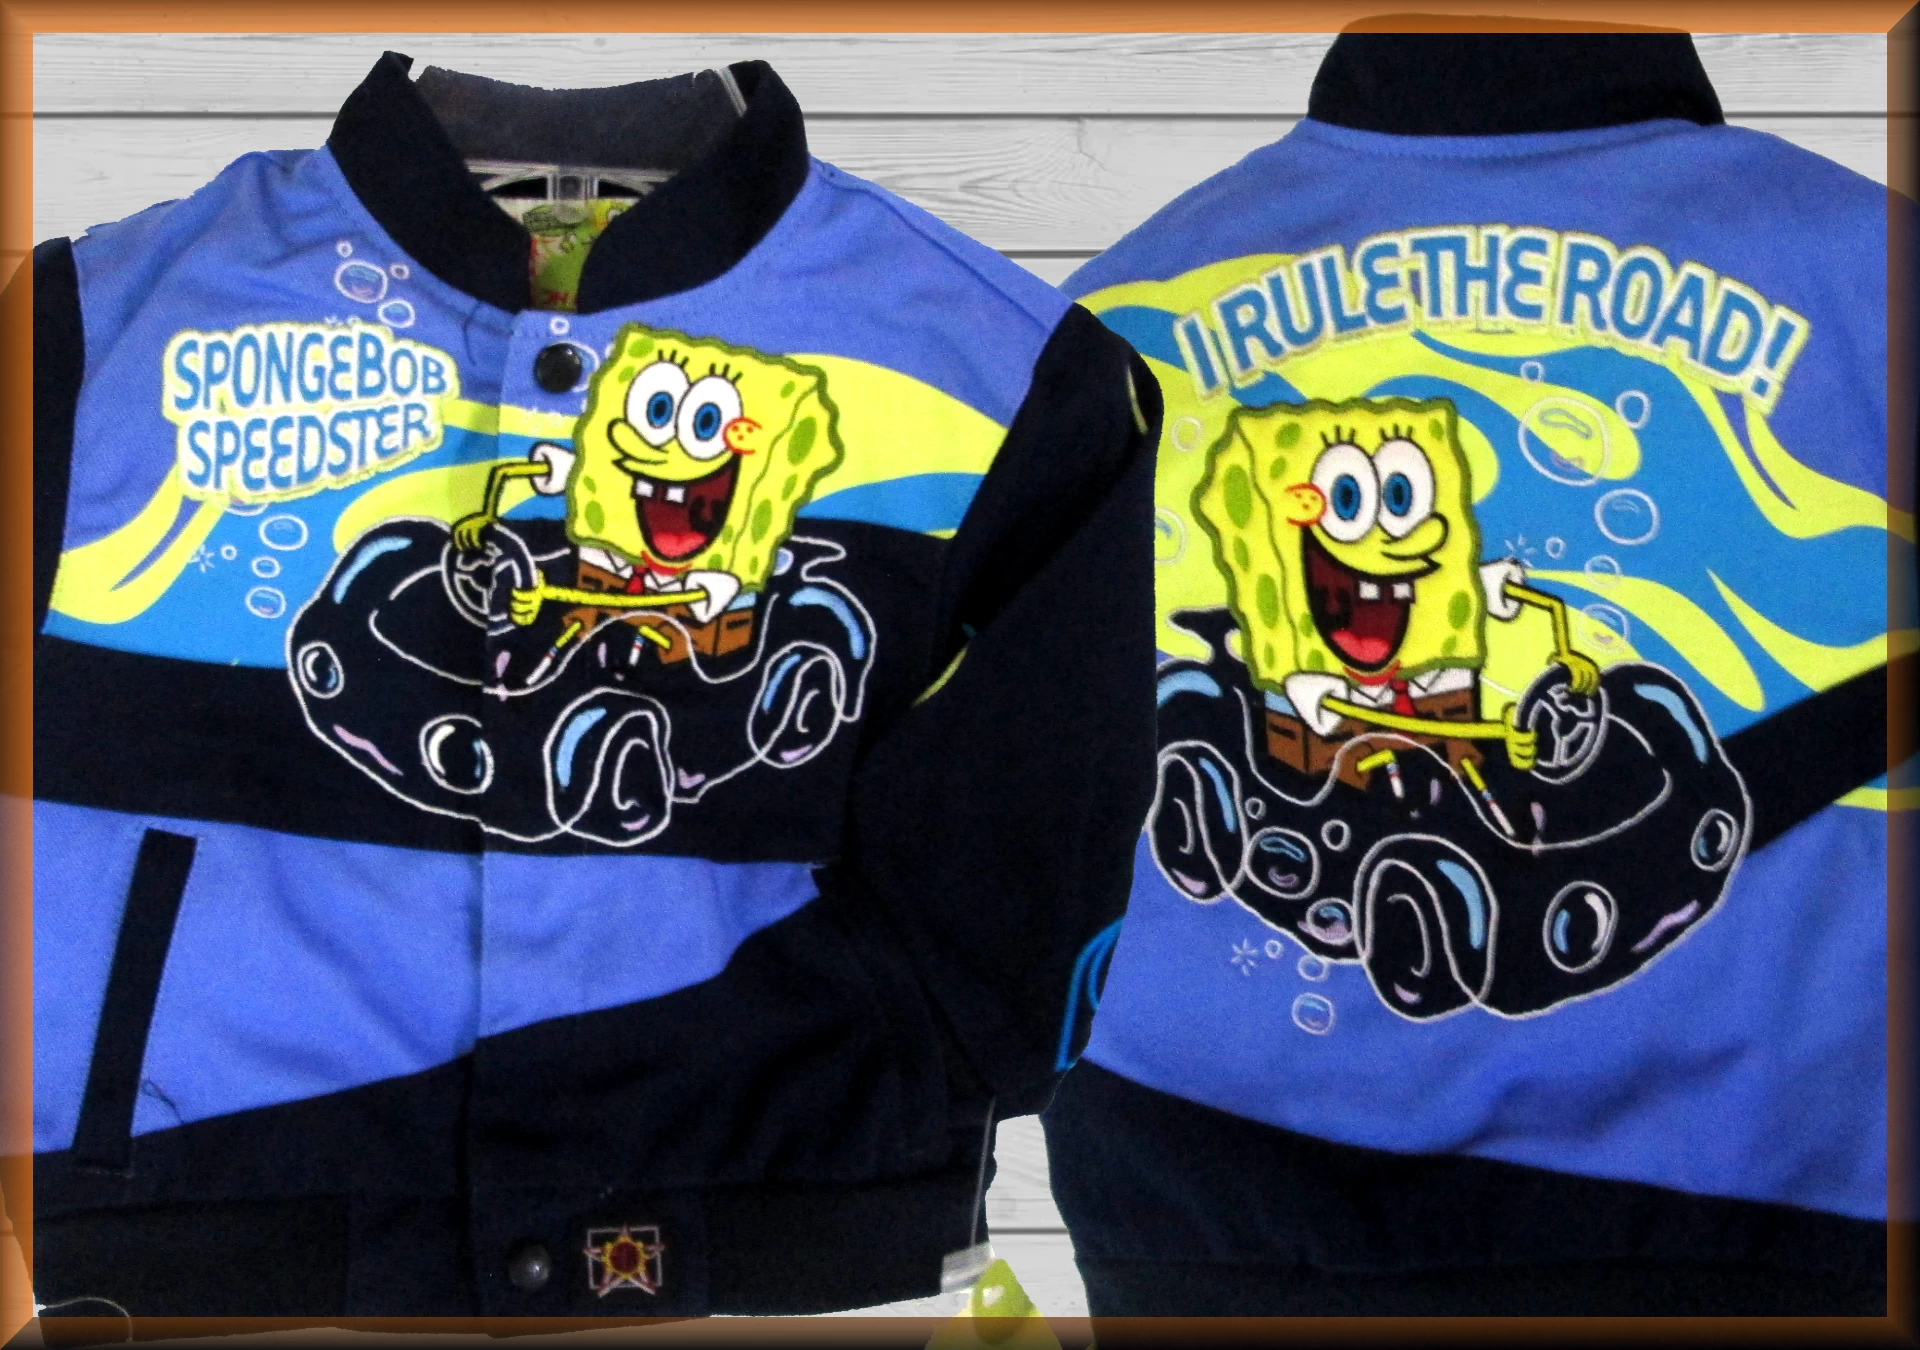 Spongebob Speedster Kids Cartoon Character Jacket by JH Design - $